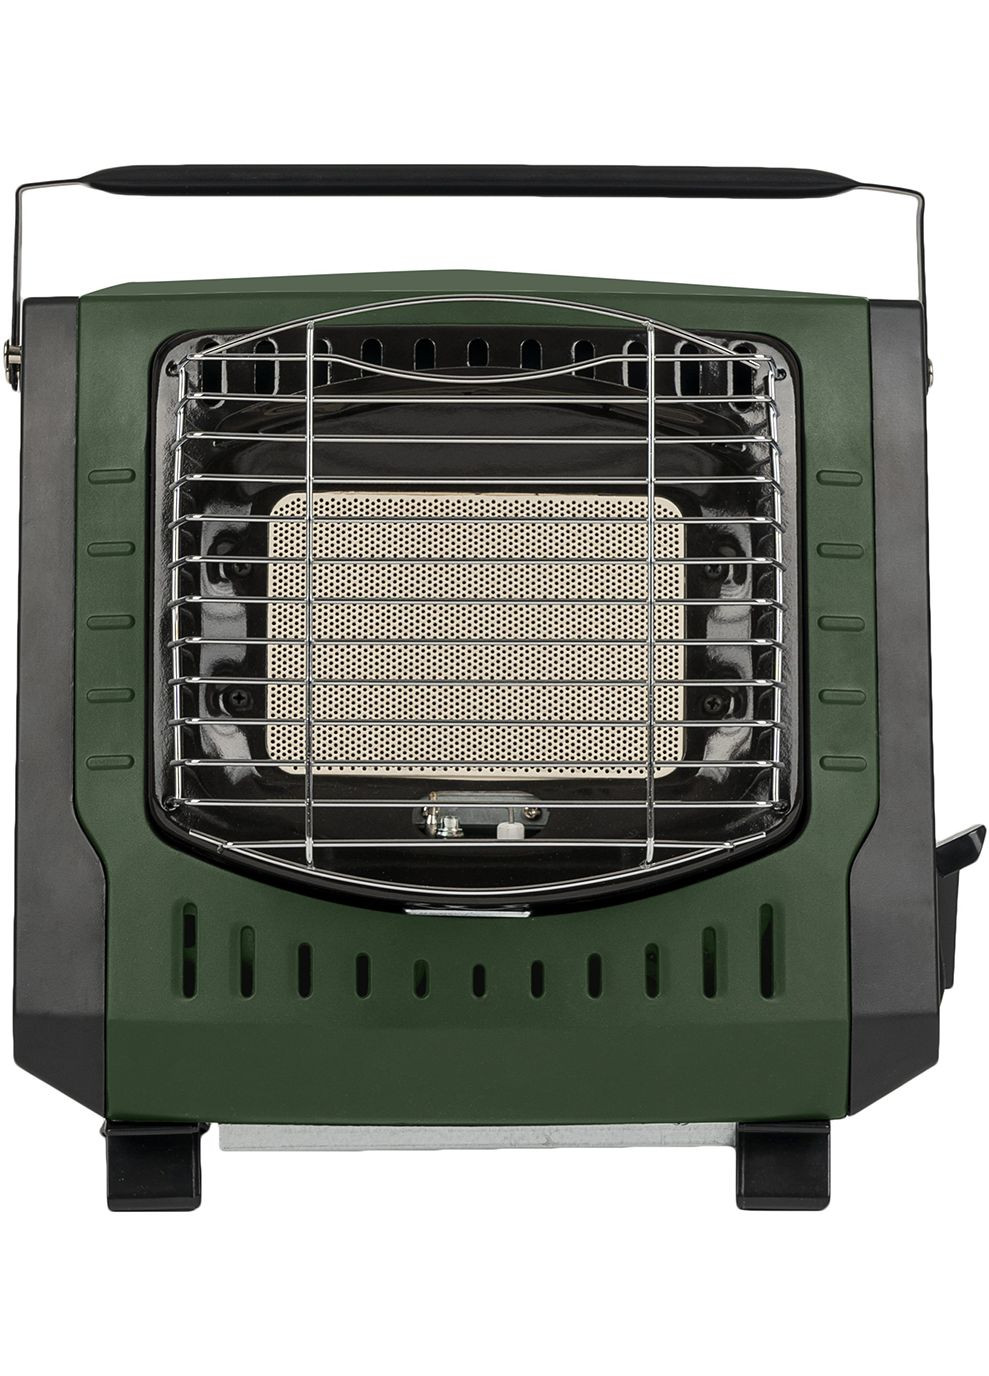 Портативный газовый обогреватель Compact Gas Heater Green Highlander (268833858)